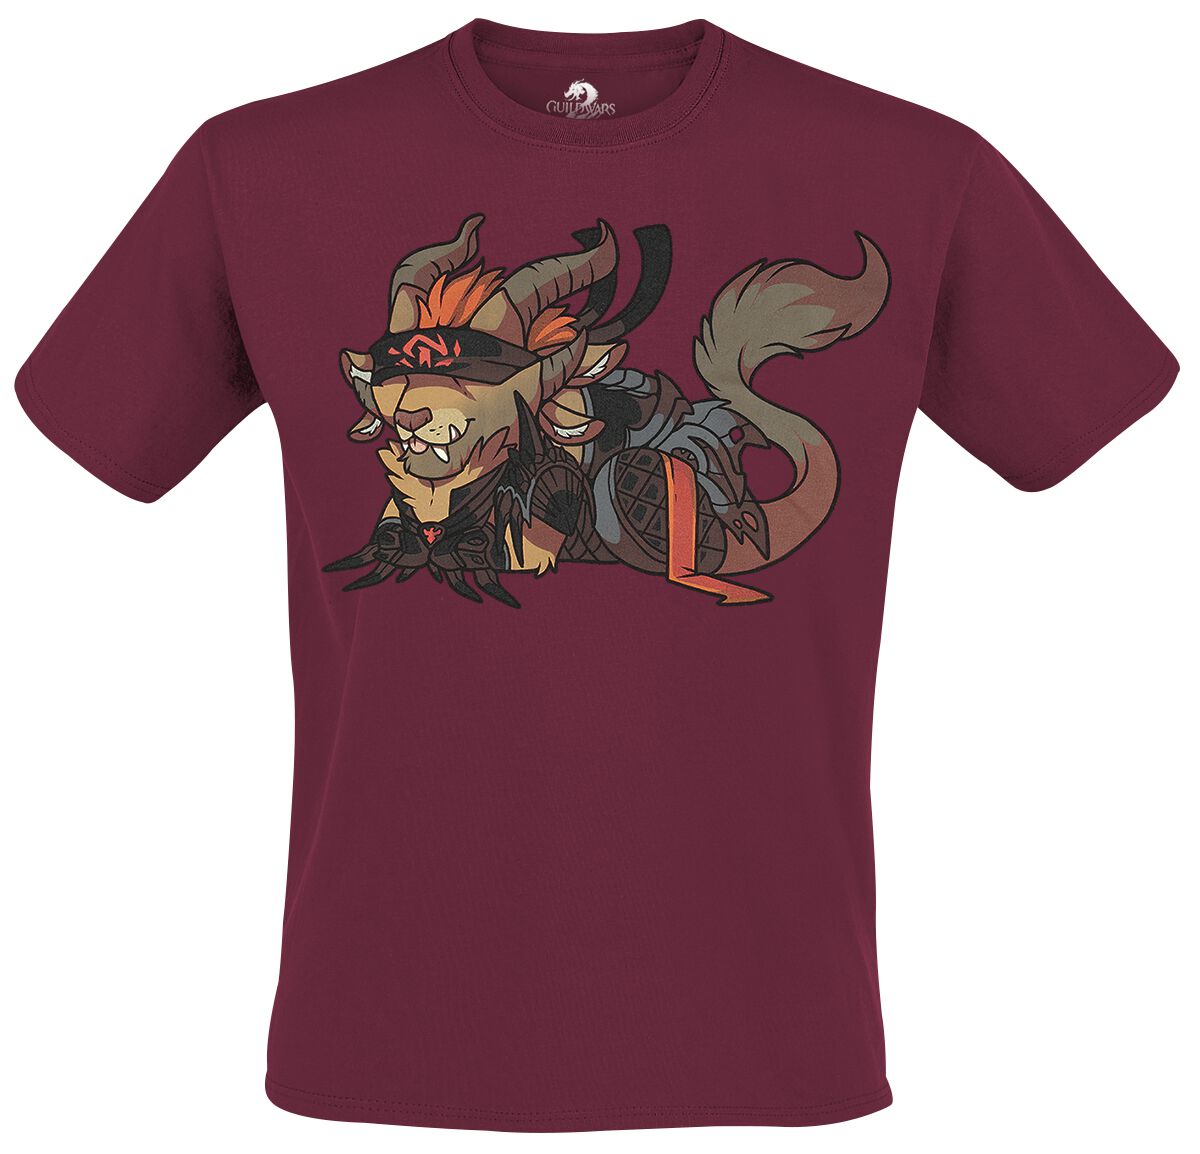 Guild Wars - Gaming T-Shirt - Rytloaf by Soof - S bis XXL - für Männer - Größe M - burgund  - EMP exklusives Merchandise!